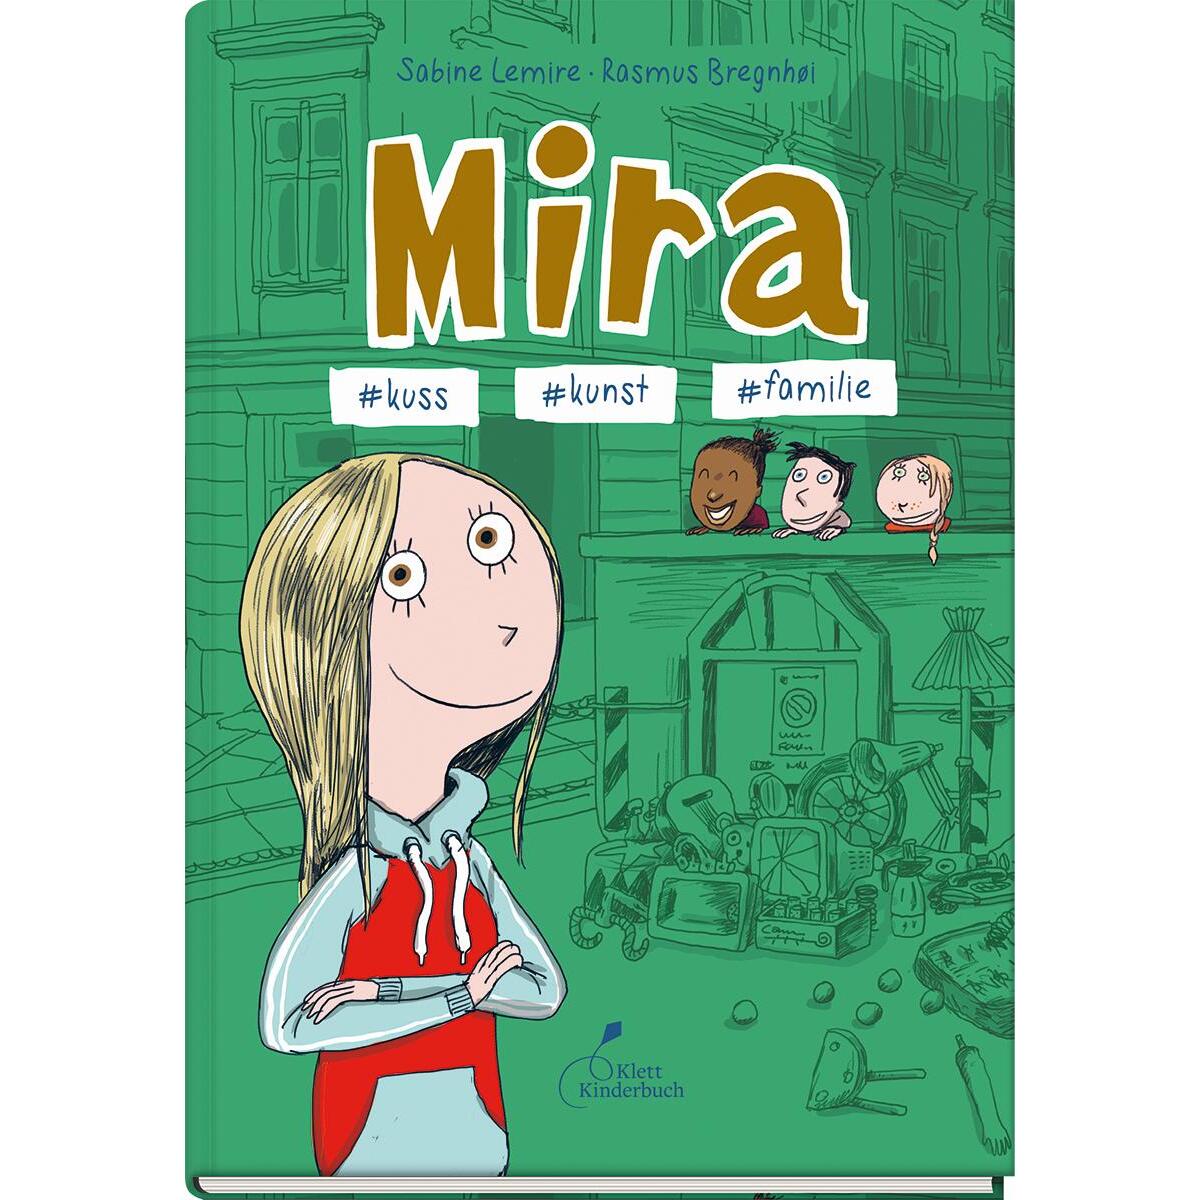 Mira #kuss #kunst #familie von Klett Kinderbuch